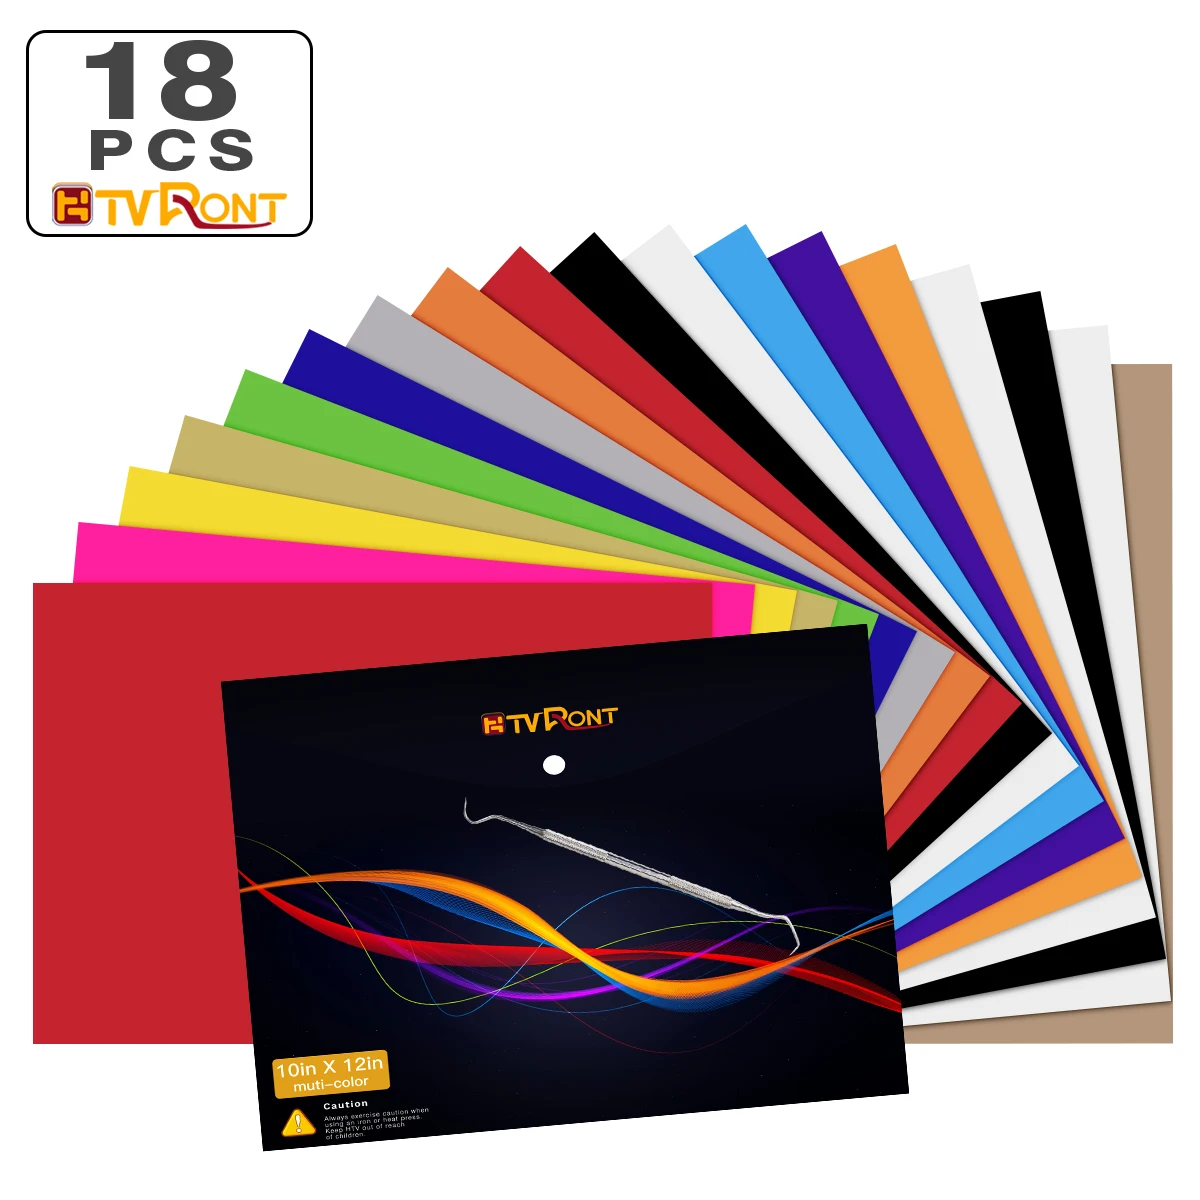 47pcs 30cm*25cm HTVRONT PU Heat Transfer Vinyl Sheets Multi-color